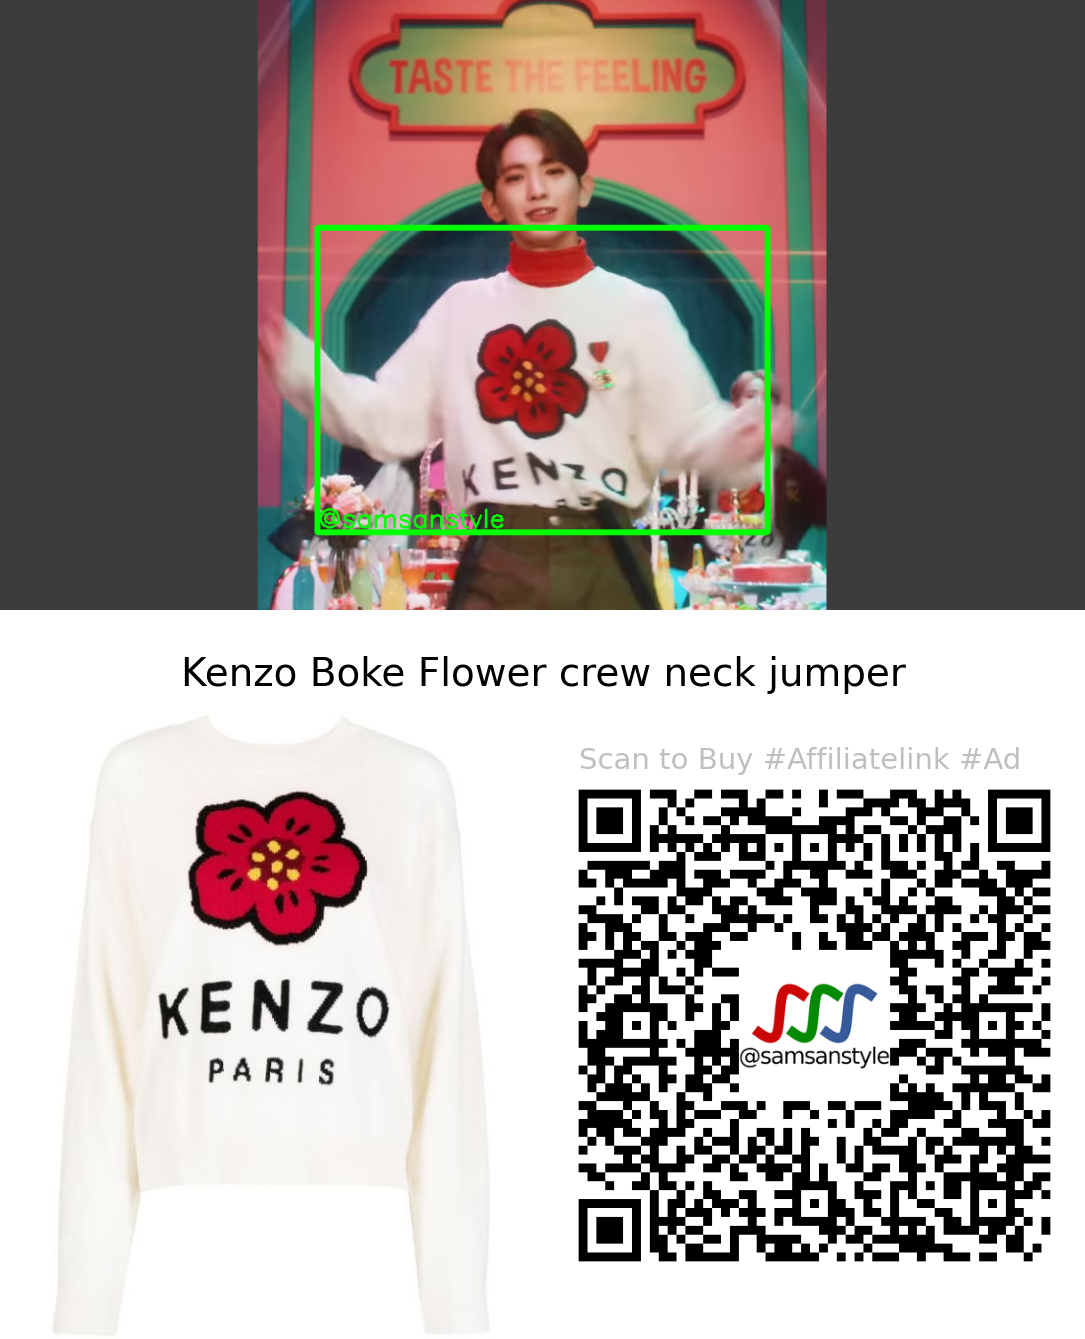 TEMPEST LEW | Taste The Feeling MV | Kenzo Boke Flower crew neck jumper